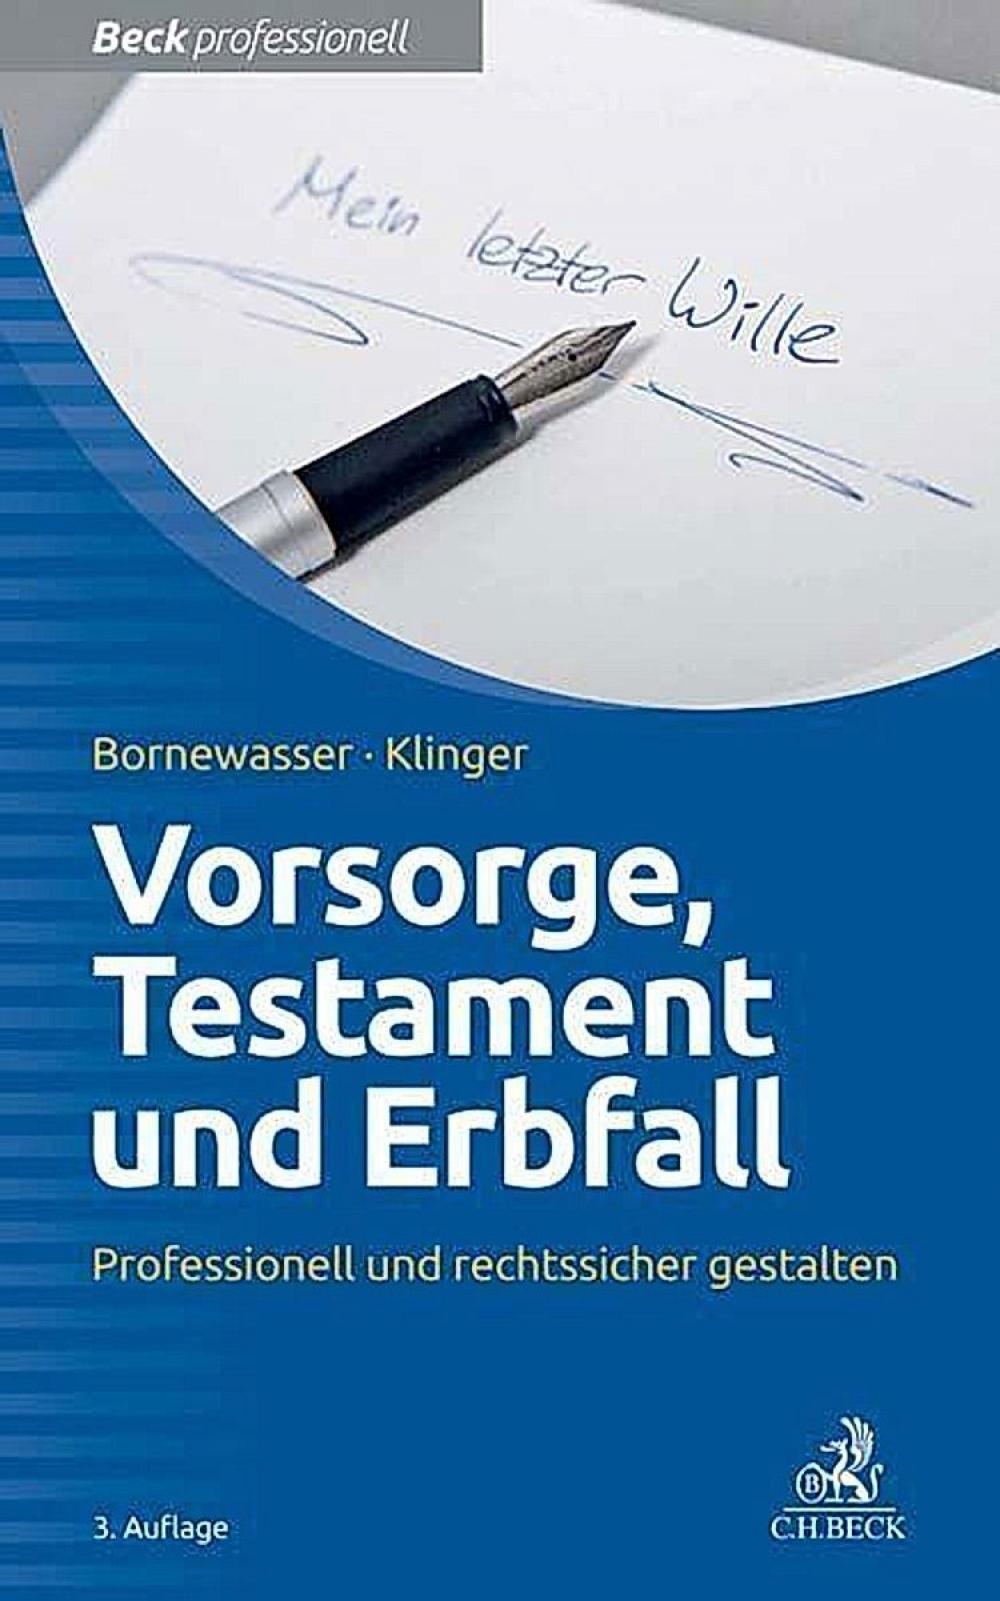 Vorsorge, Testament und Erbfall - Professionell und rechtssicher gestalten, 2. Auflage title=